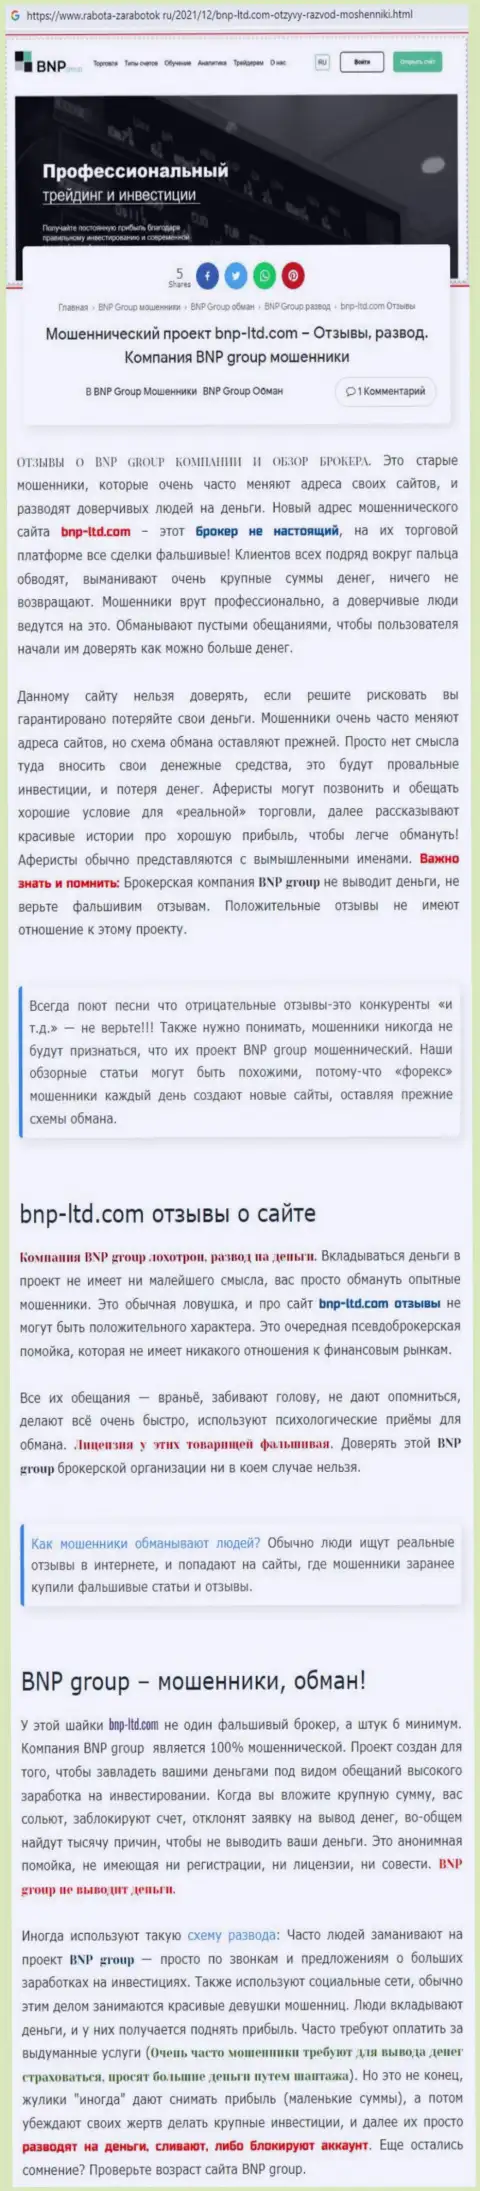 О вложенных в компанию BNPGroup сбережениях можете позабыть, присваивают все до последнего рубля (обзор манипуляций)